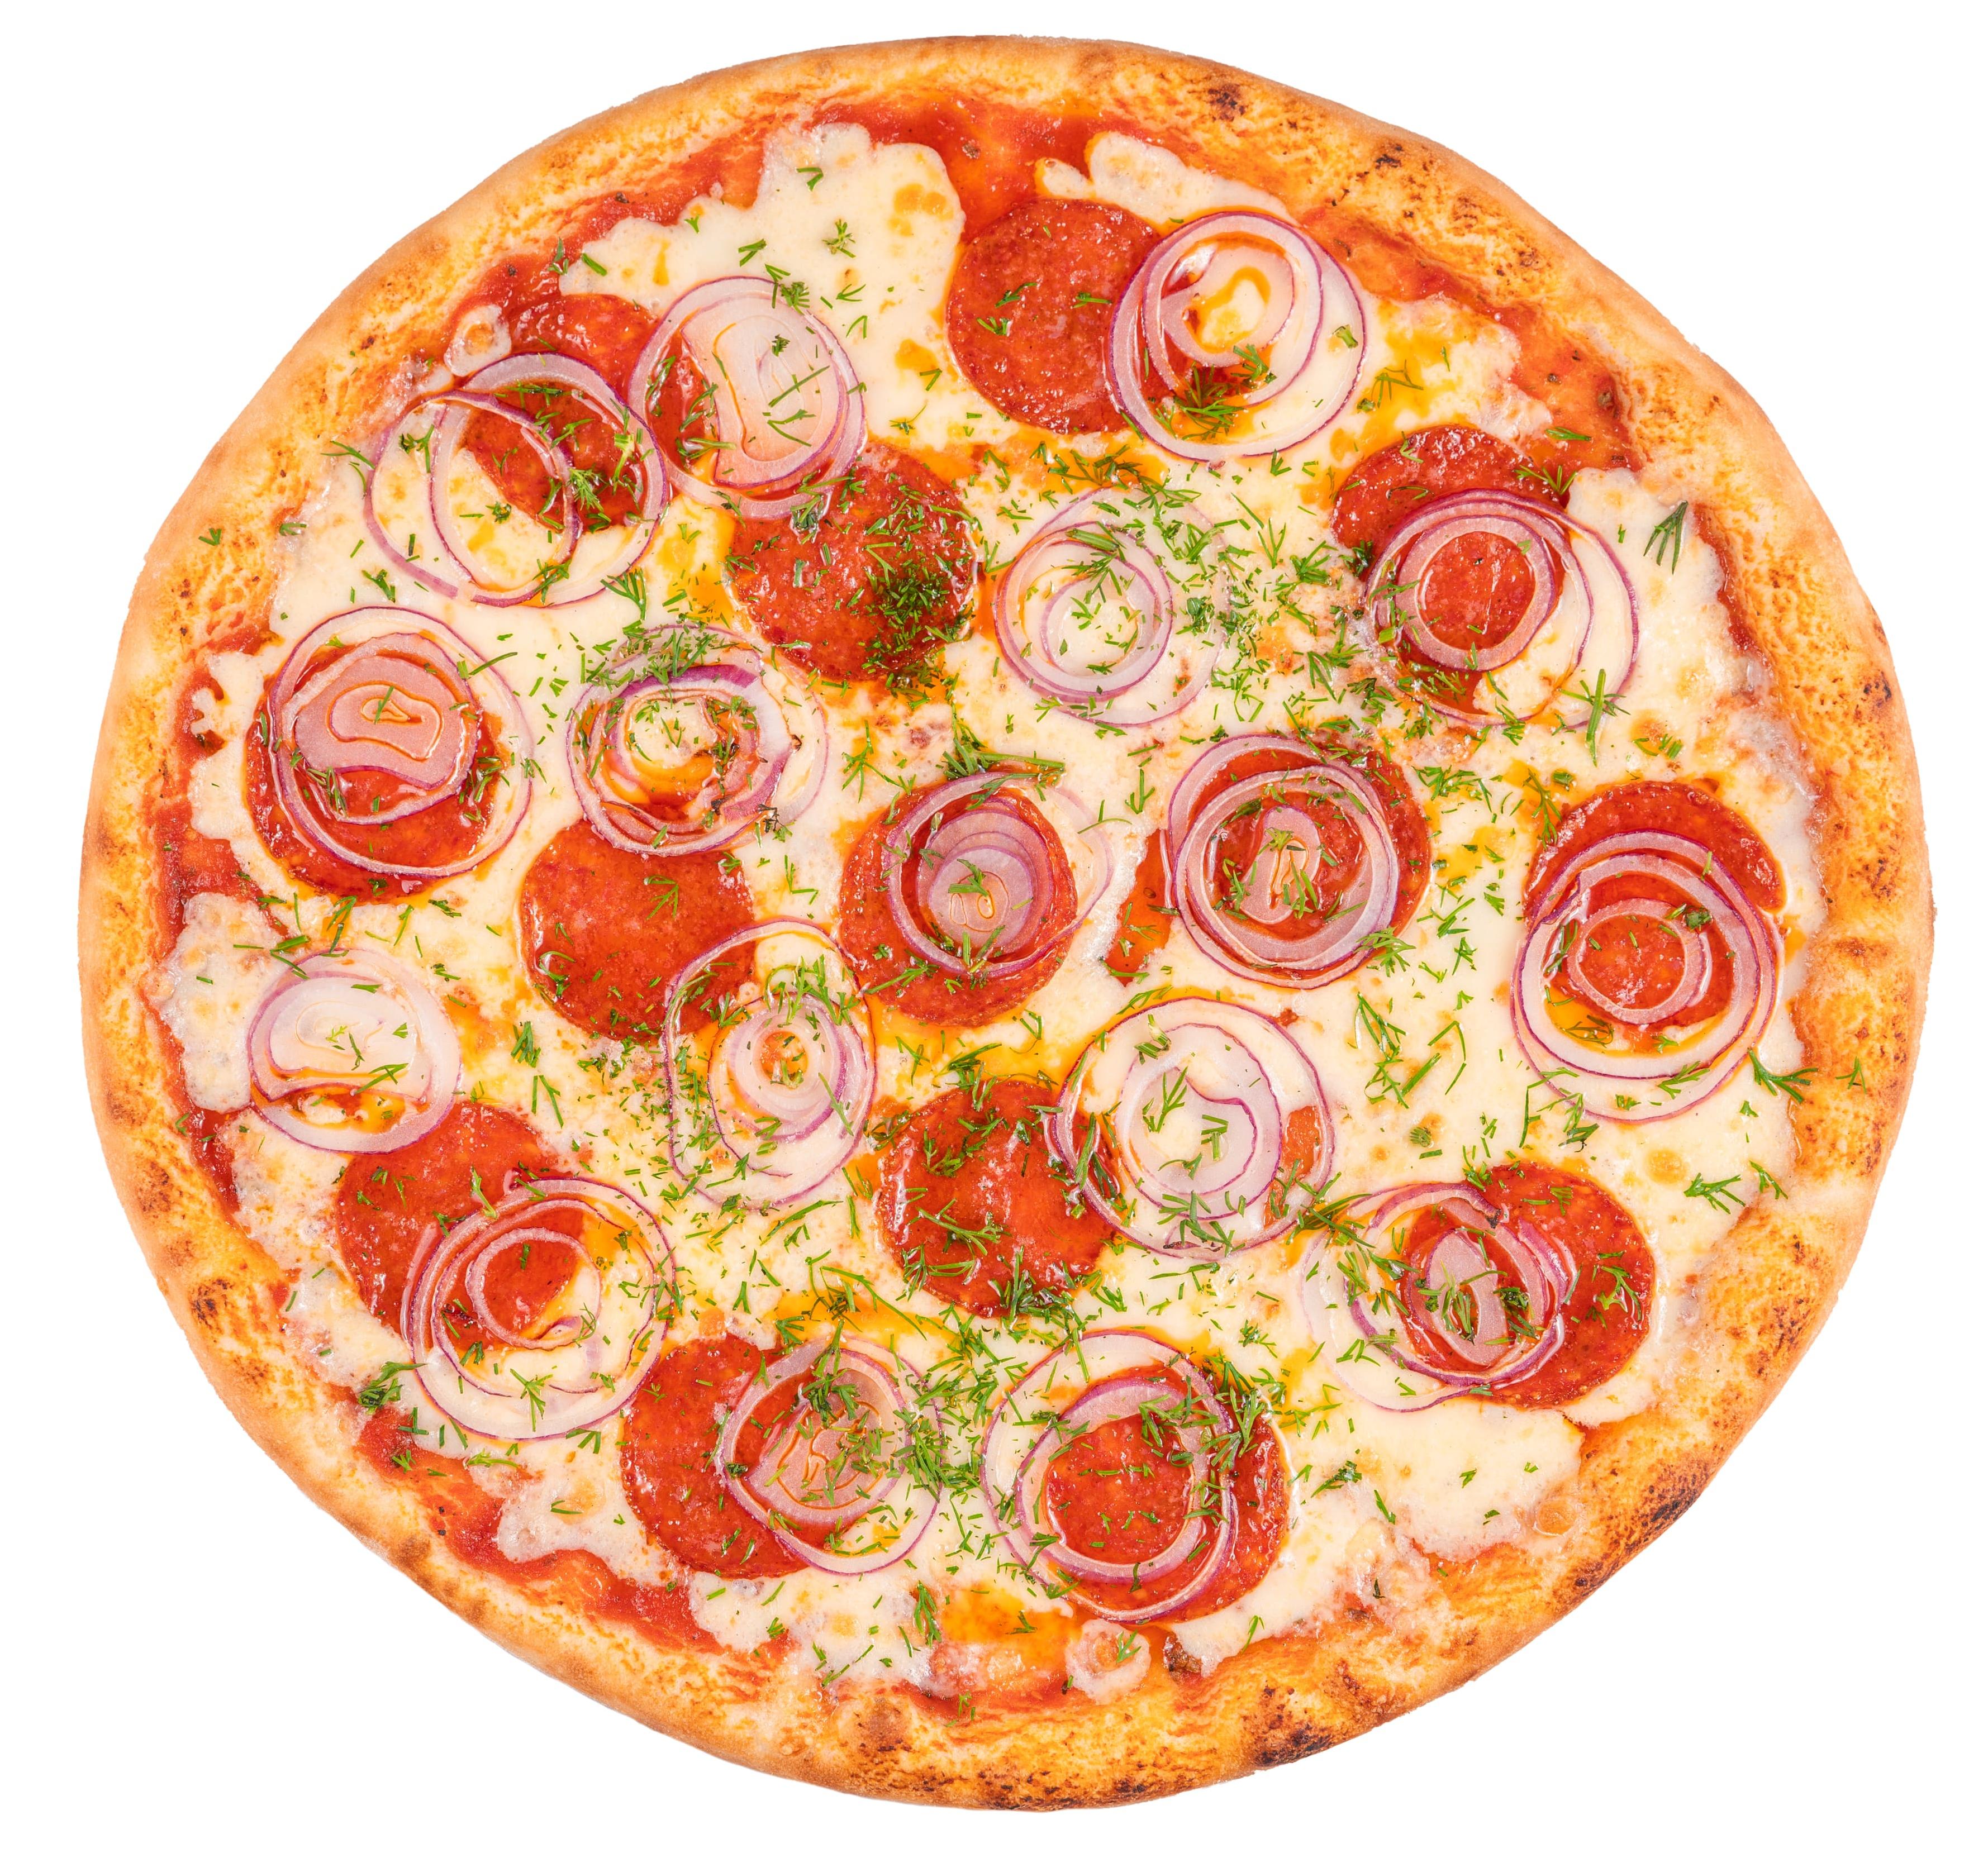 состав начинки для пиццы пепперони фото 17